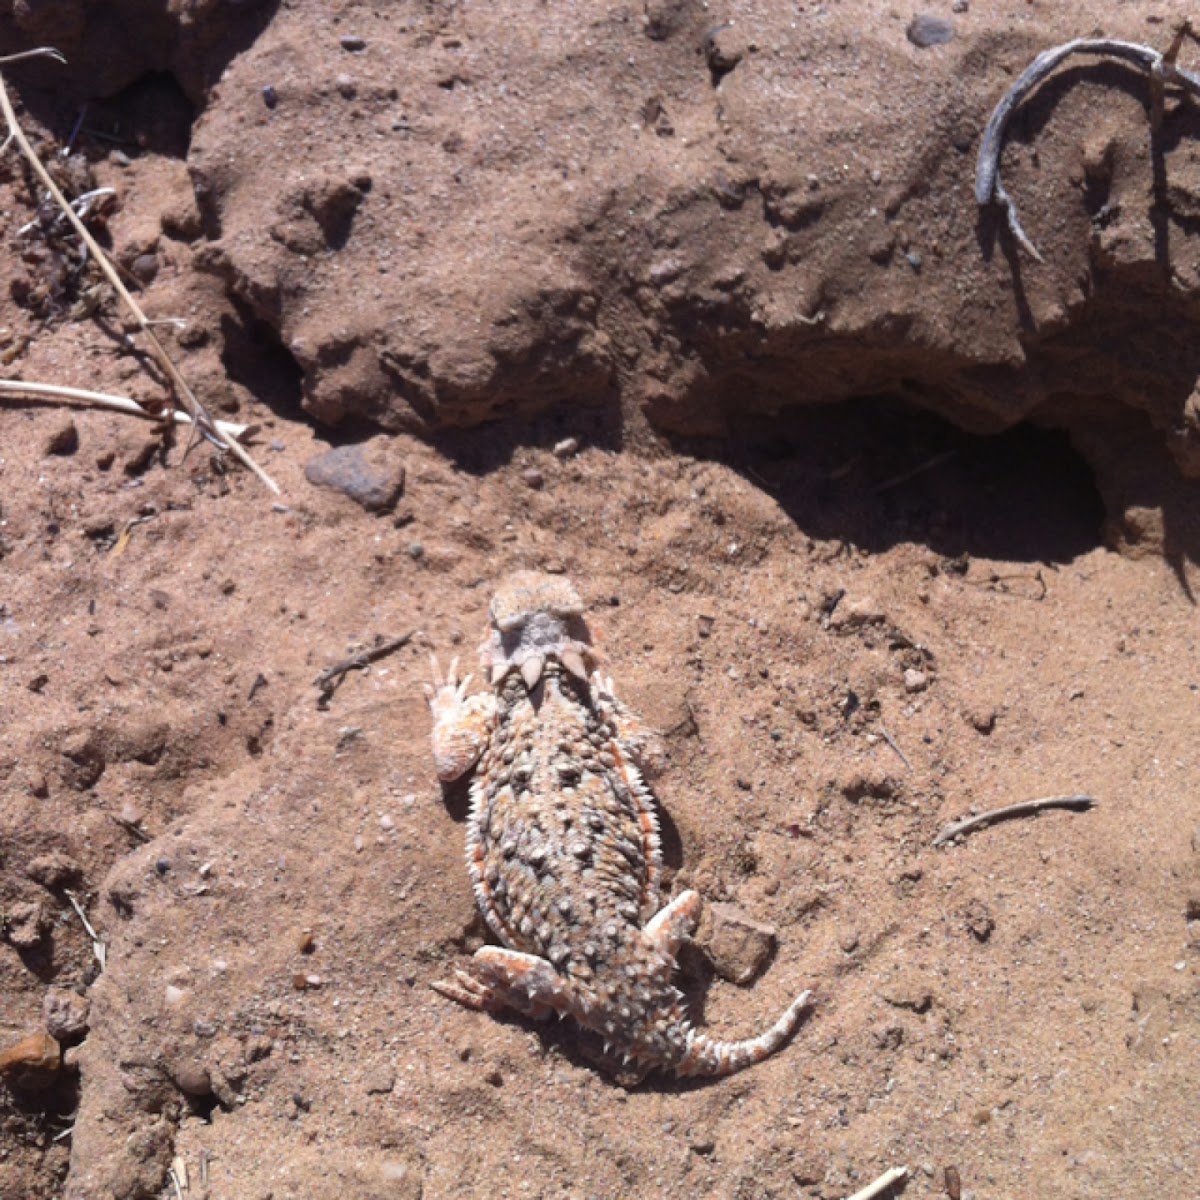 Desert horned lizard